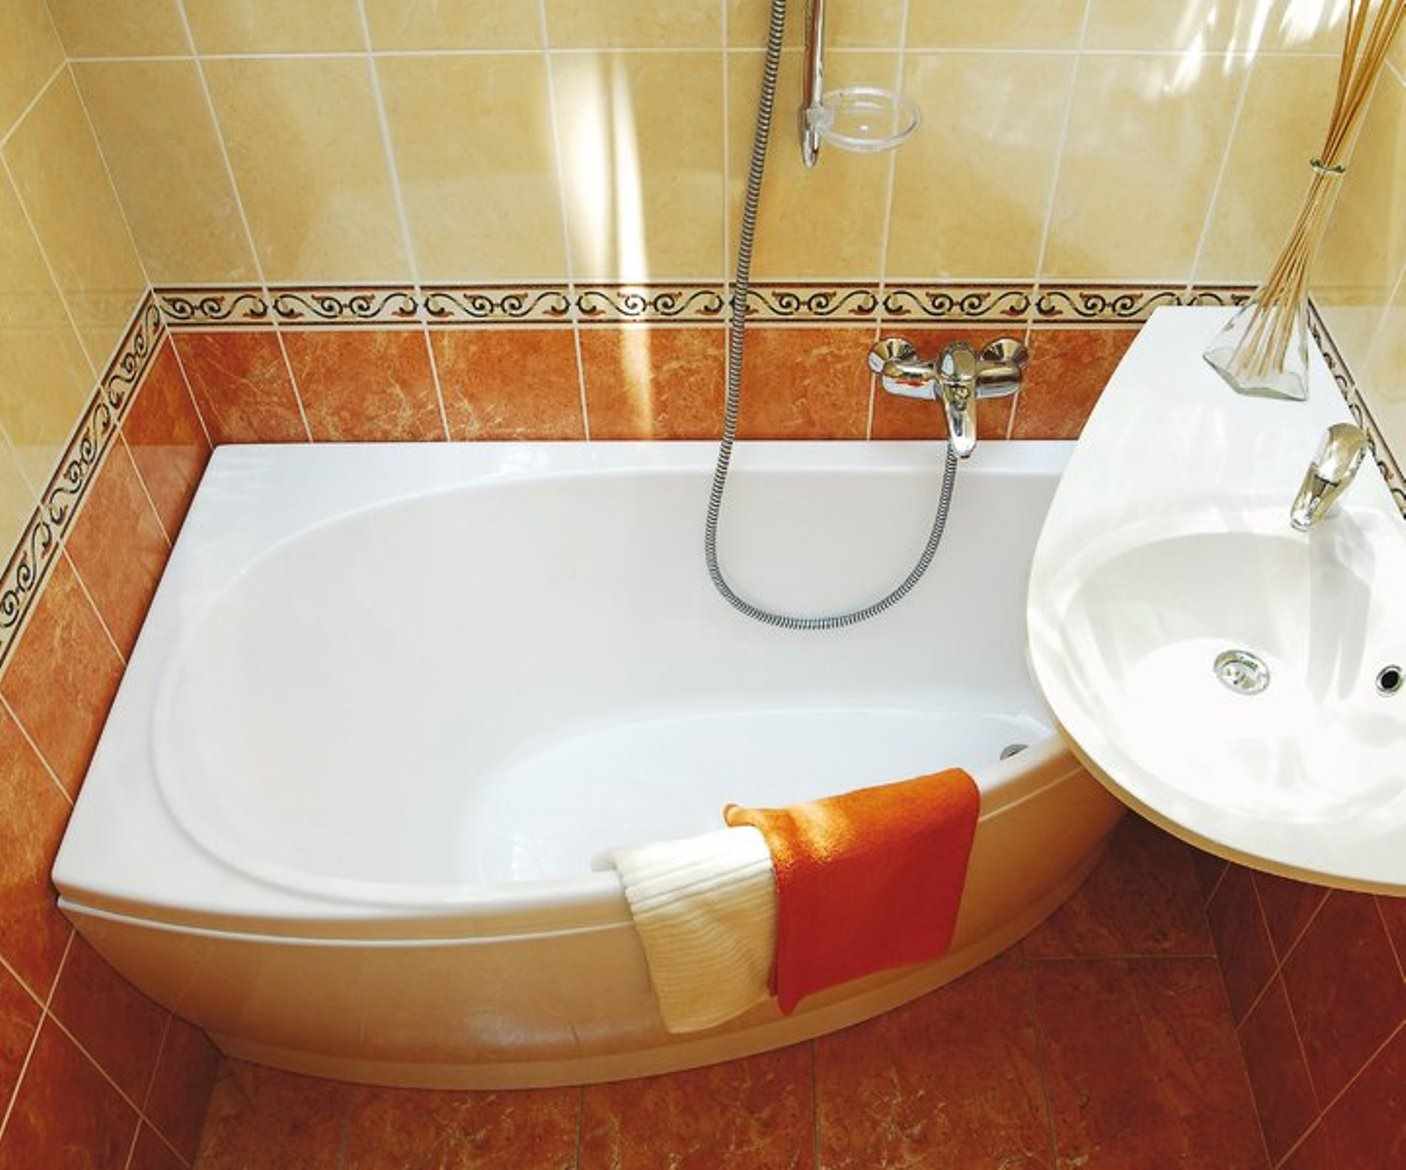 вариант яркого стиля ванной комнаты с угловой ванной